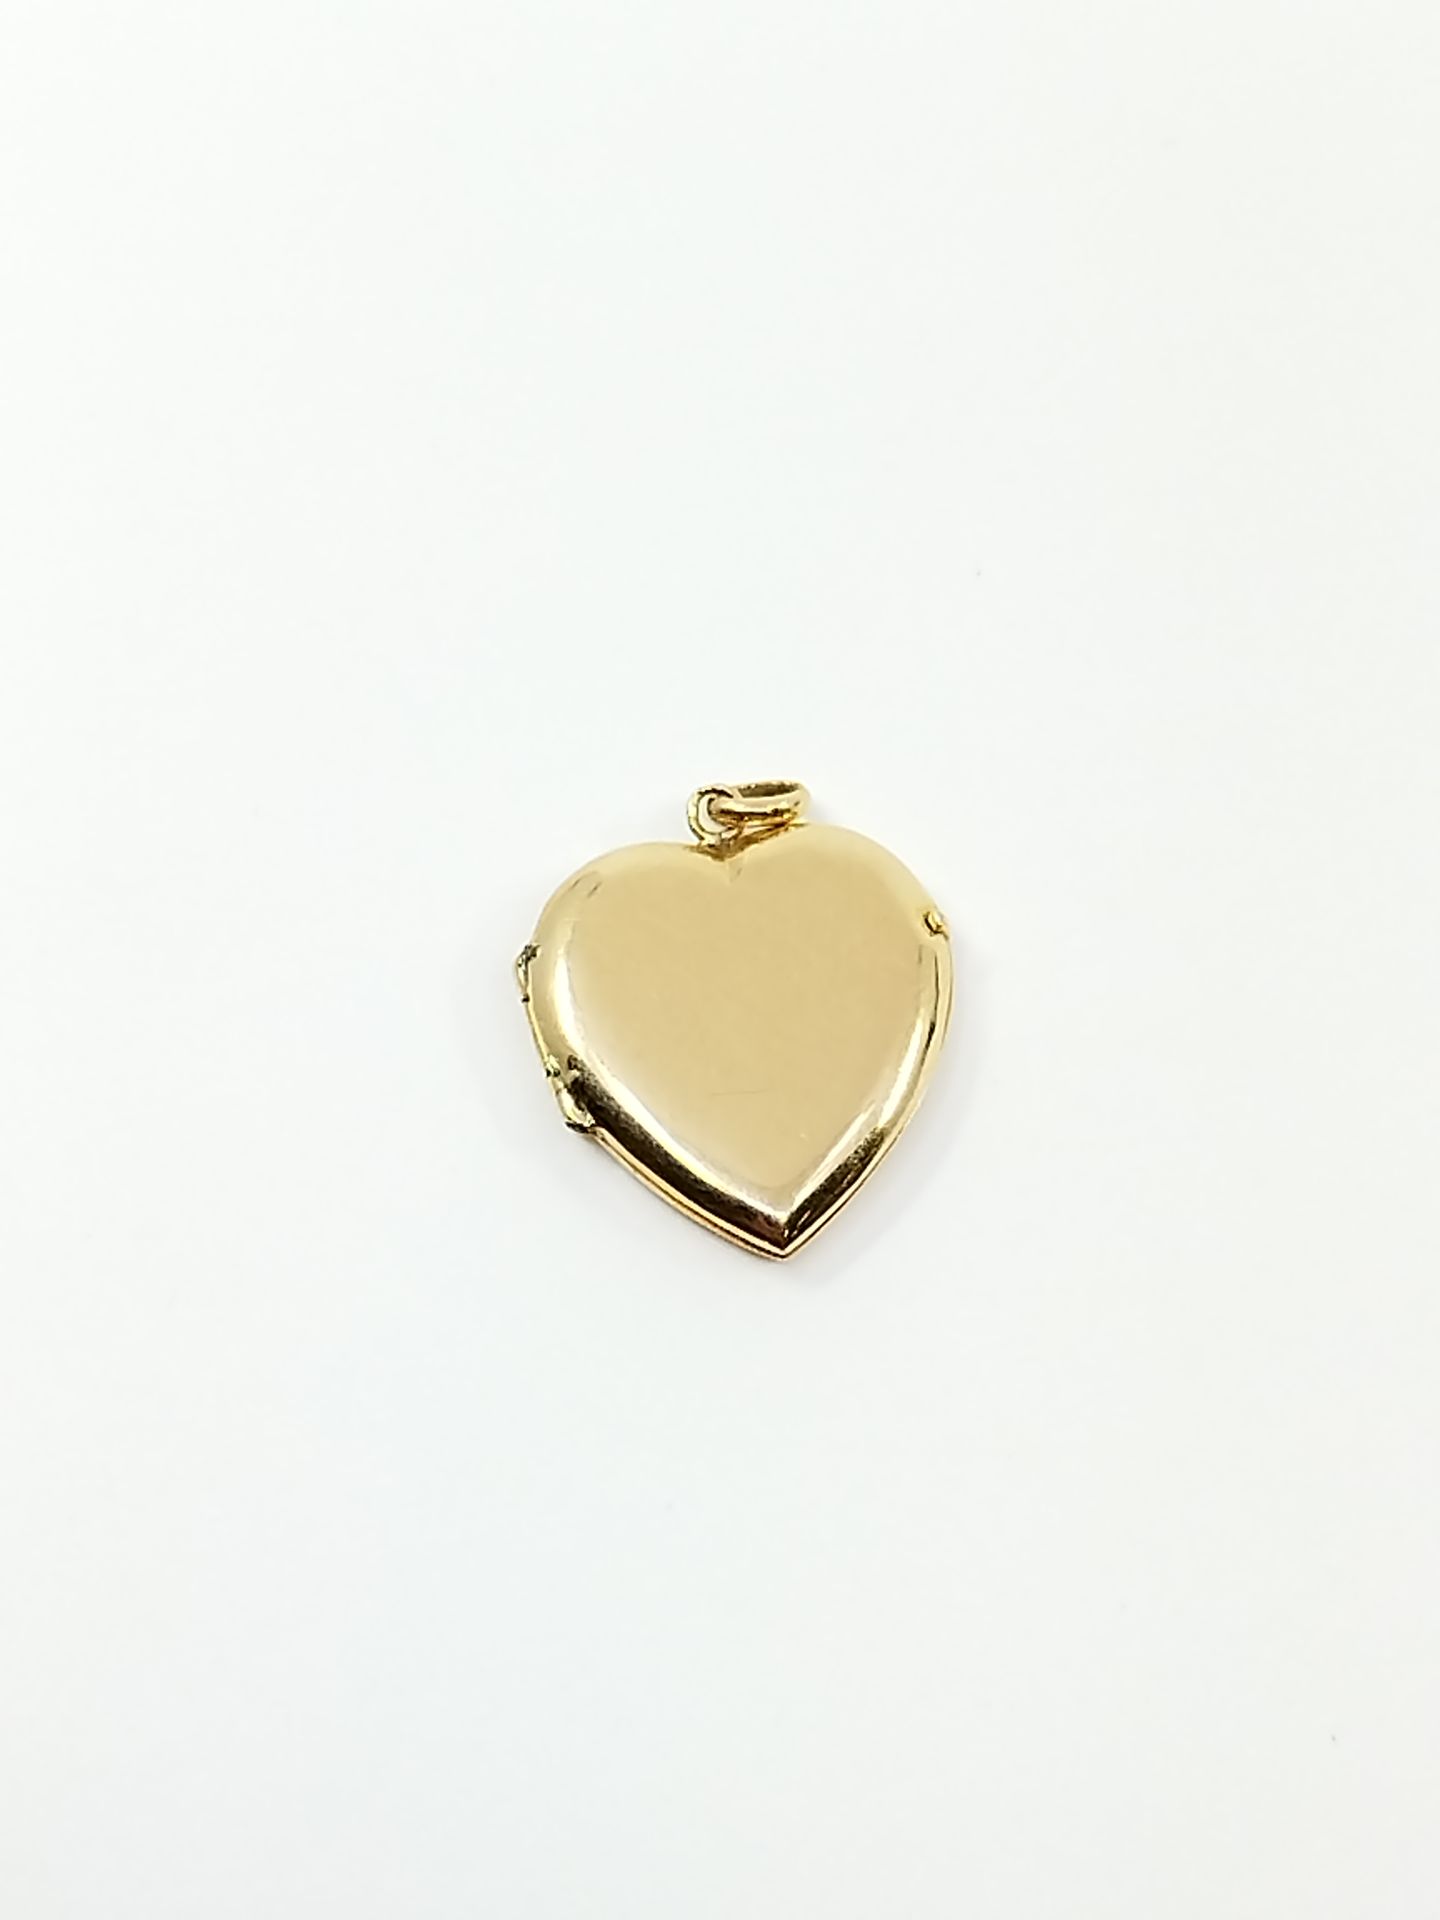 Null Colgante en forma de corazón en oro amarillo 750°.

Peso : 2,76 g